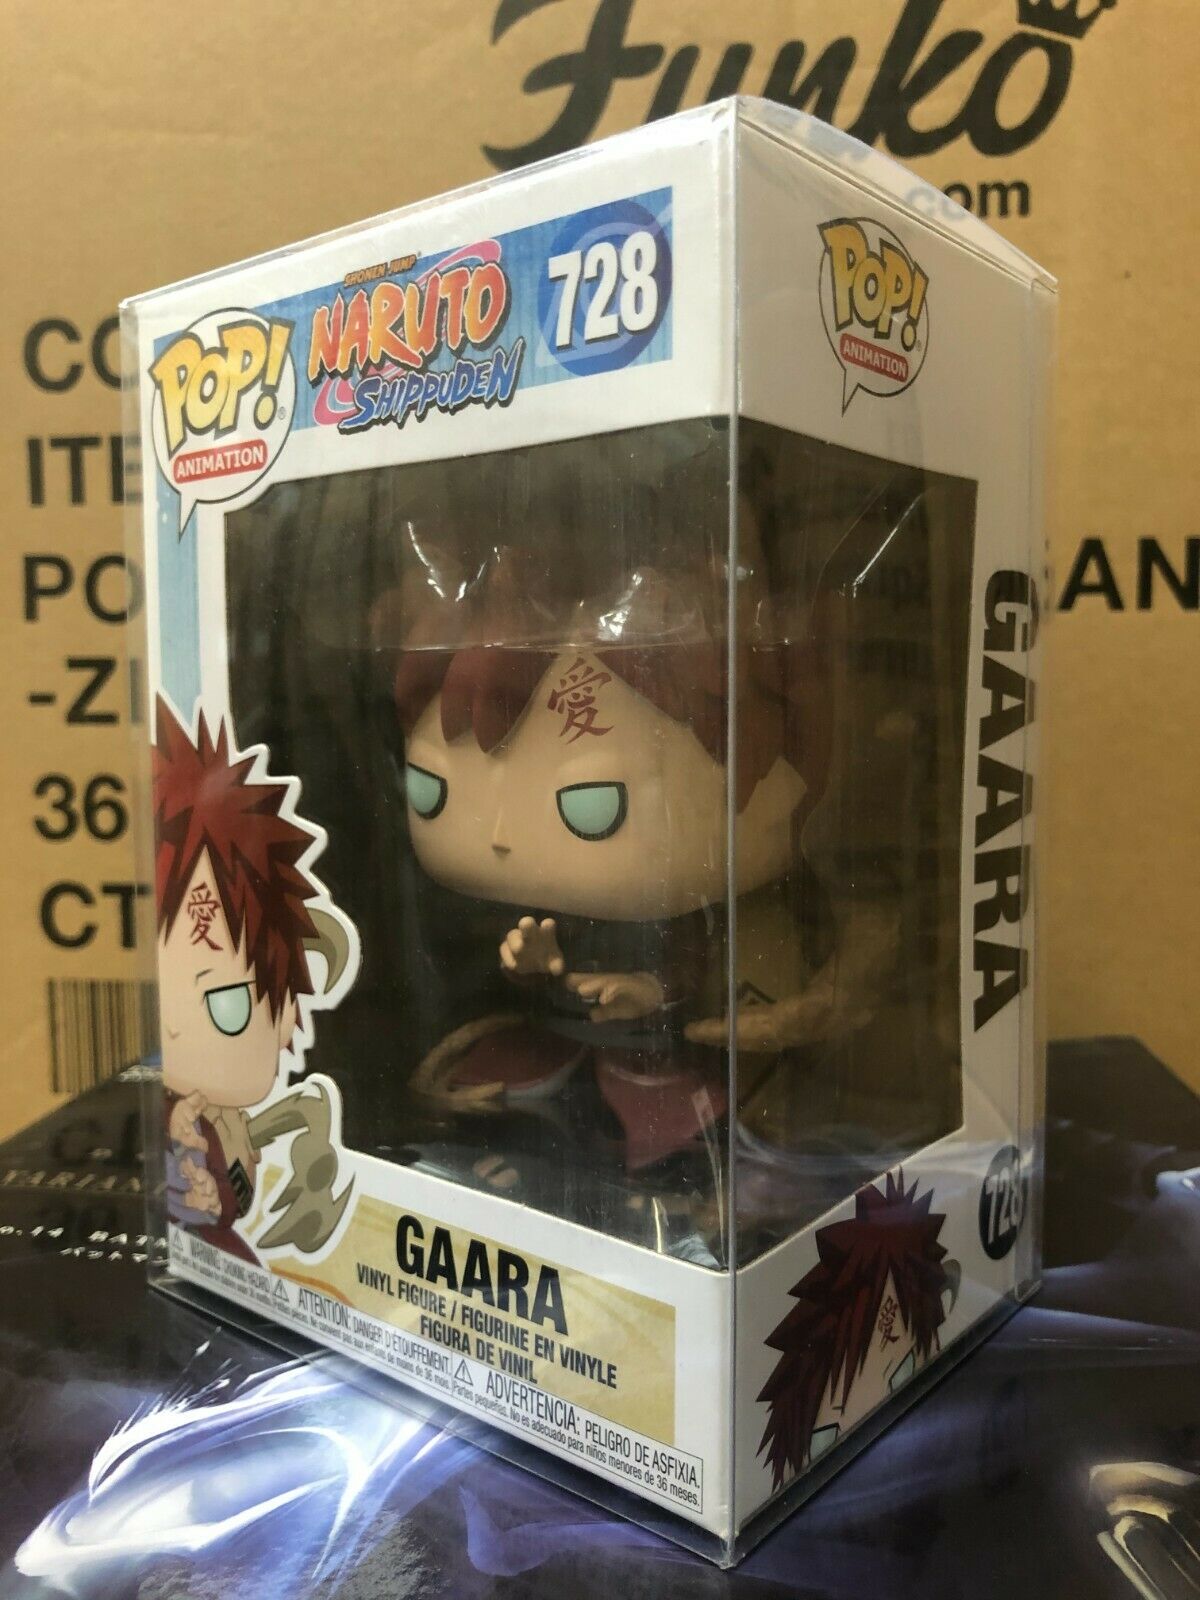 Pop Gaara  La Boutique Naruto